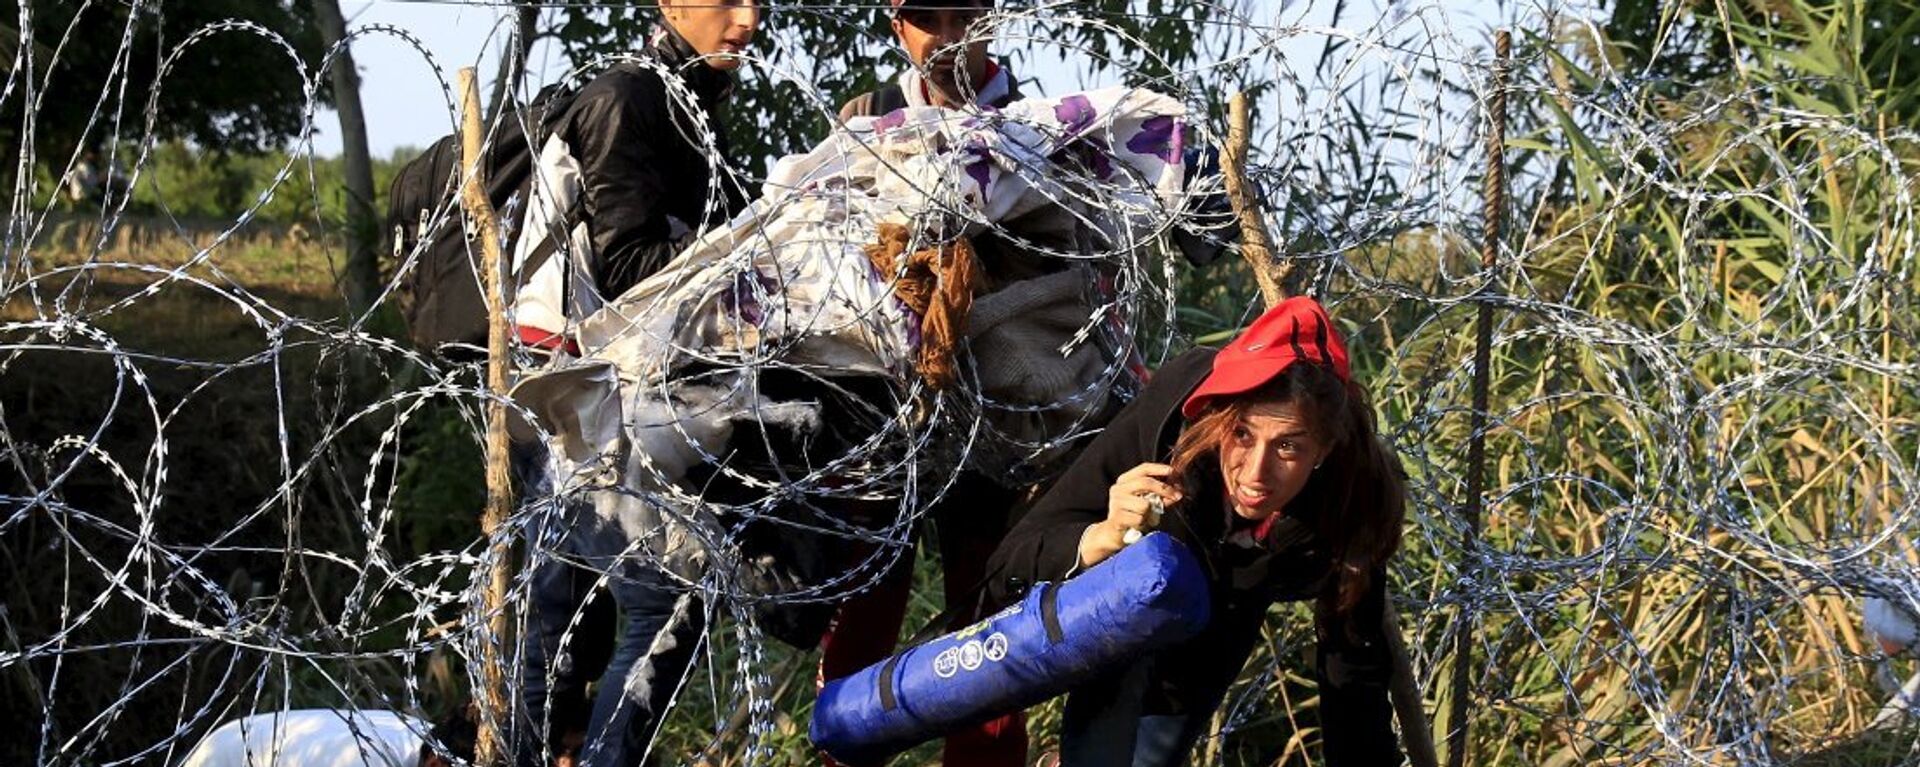 Göçmen geçişini engellemek için Sırbistan sınırına dikenli tel çekmeye devam eden Macaristan ise zirveye katılmadı. Yalnızca dün Sırbistan üzerinden 700’ü çocuk 3 bin 241 kişi ülkeye girerken, bunun Macaristan için rekor bir sayı olduğu belirtildi.  - Sputnik Türkiye, 1920, 26.11.2022